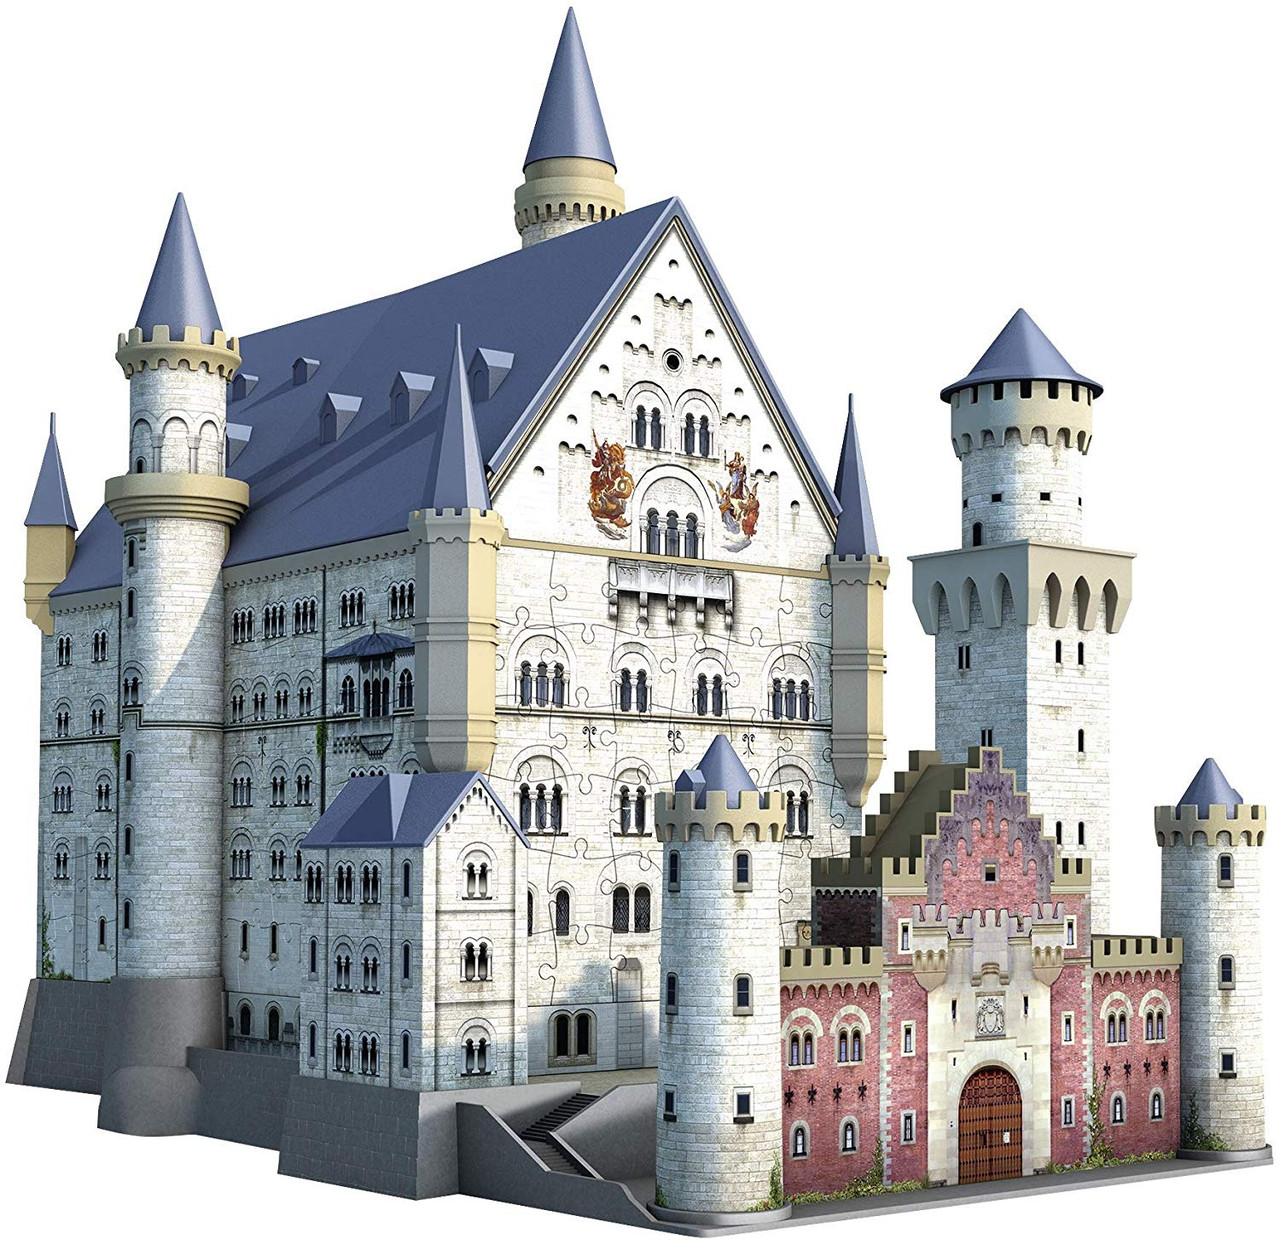 Ravensburger 3D Puzzle - Disney Castle - 216 Pieces - New/Boxed